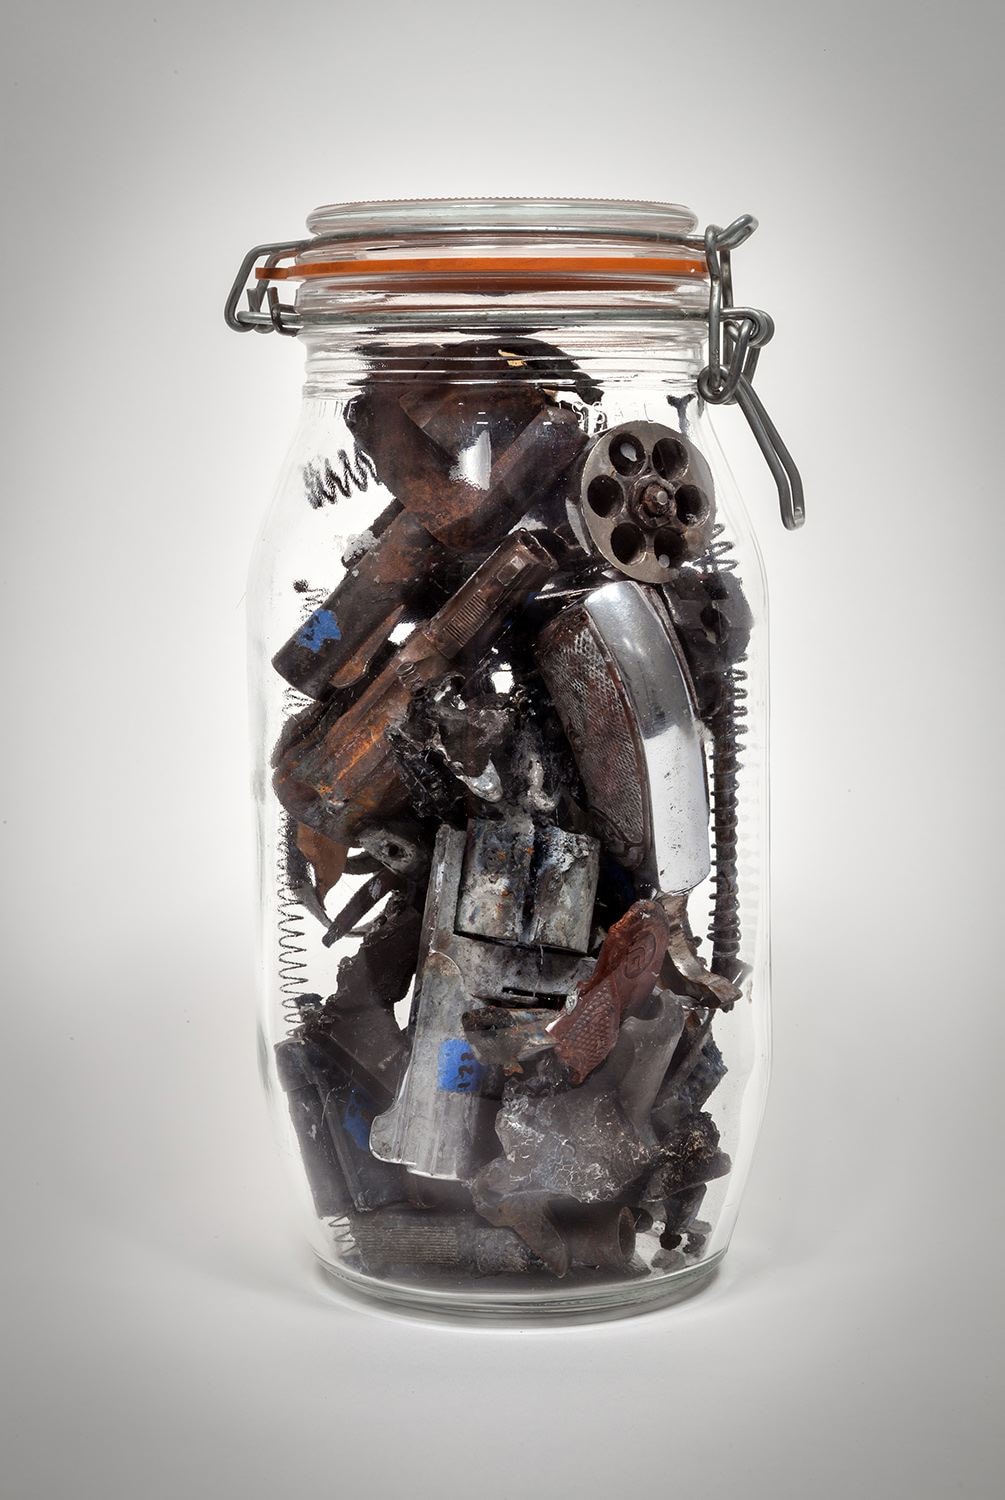 Robert C. Tannen, Specie-Men Gun Parts in a Bottle, 2014